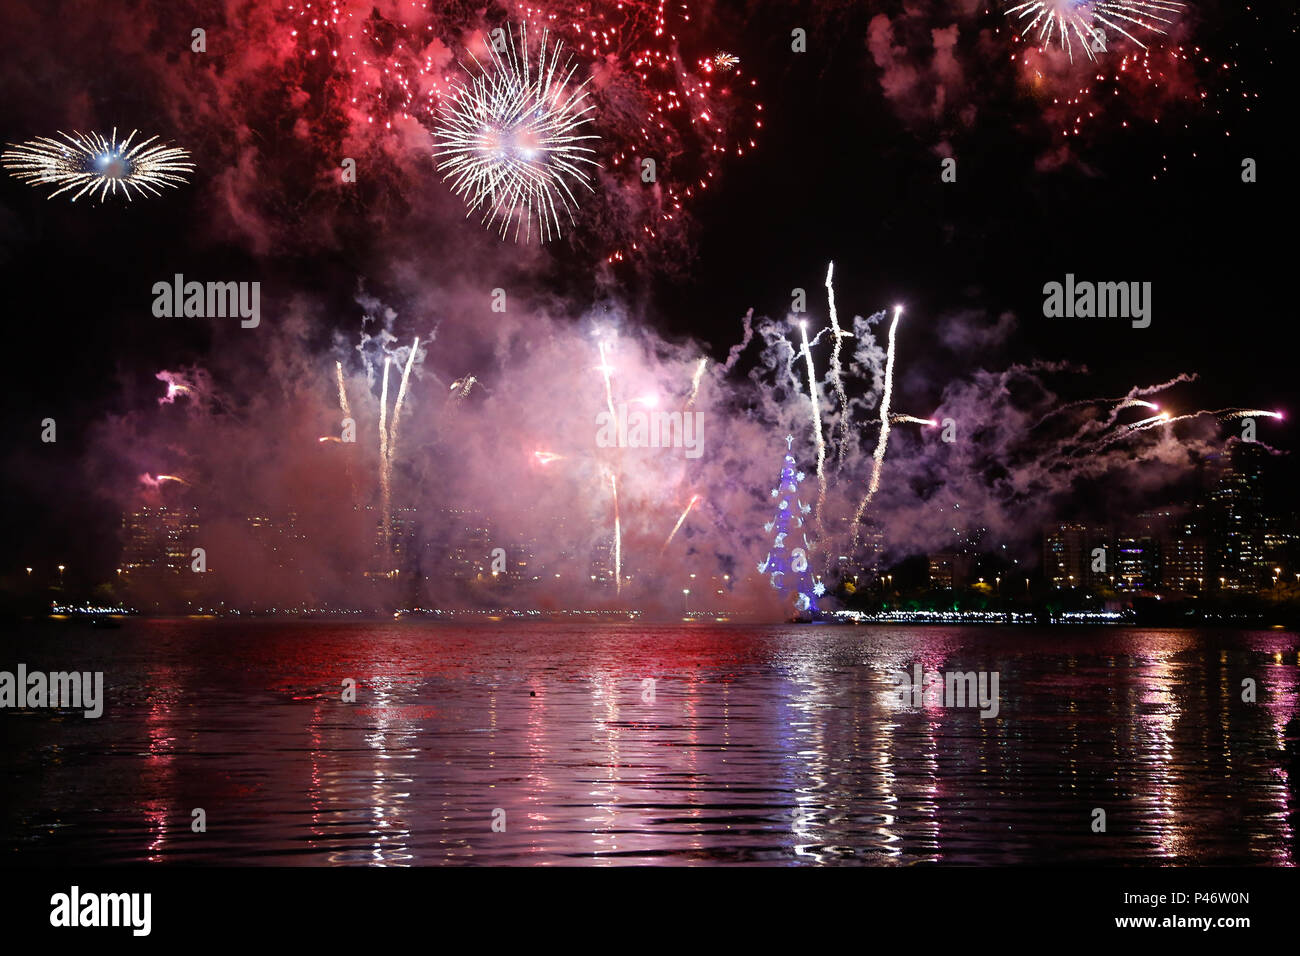 RIO DE JANEIRO, RJ - 29/11/2014: INAUGURAÇÃO ARVORE DE NATAL DA LAGOA RJ -  Fogos de artificio durante a inauguração da árvore de Natal da Lagoa/RJ,  realizada no Lagoa Rodrigo de Freitas. (